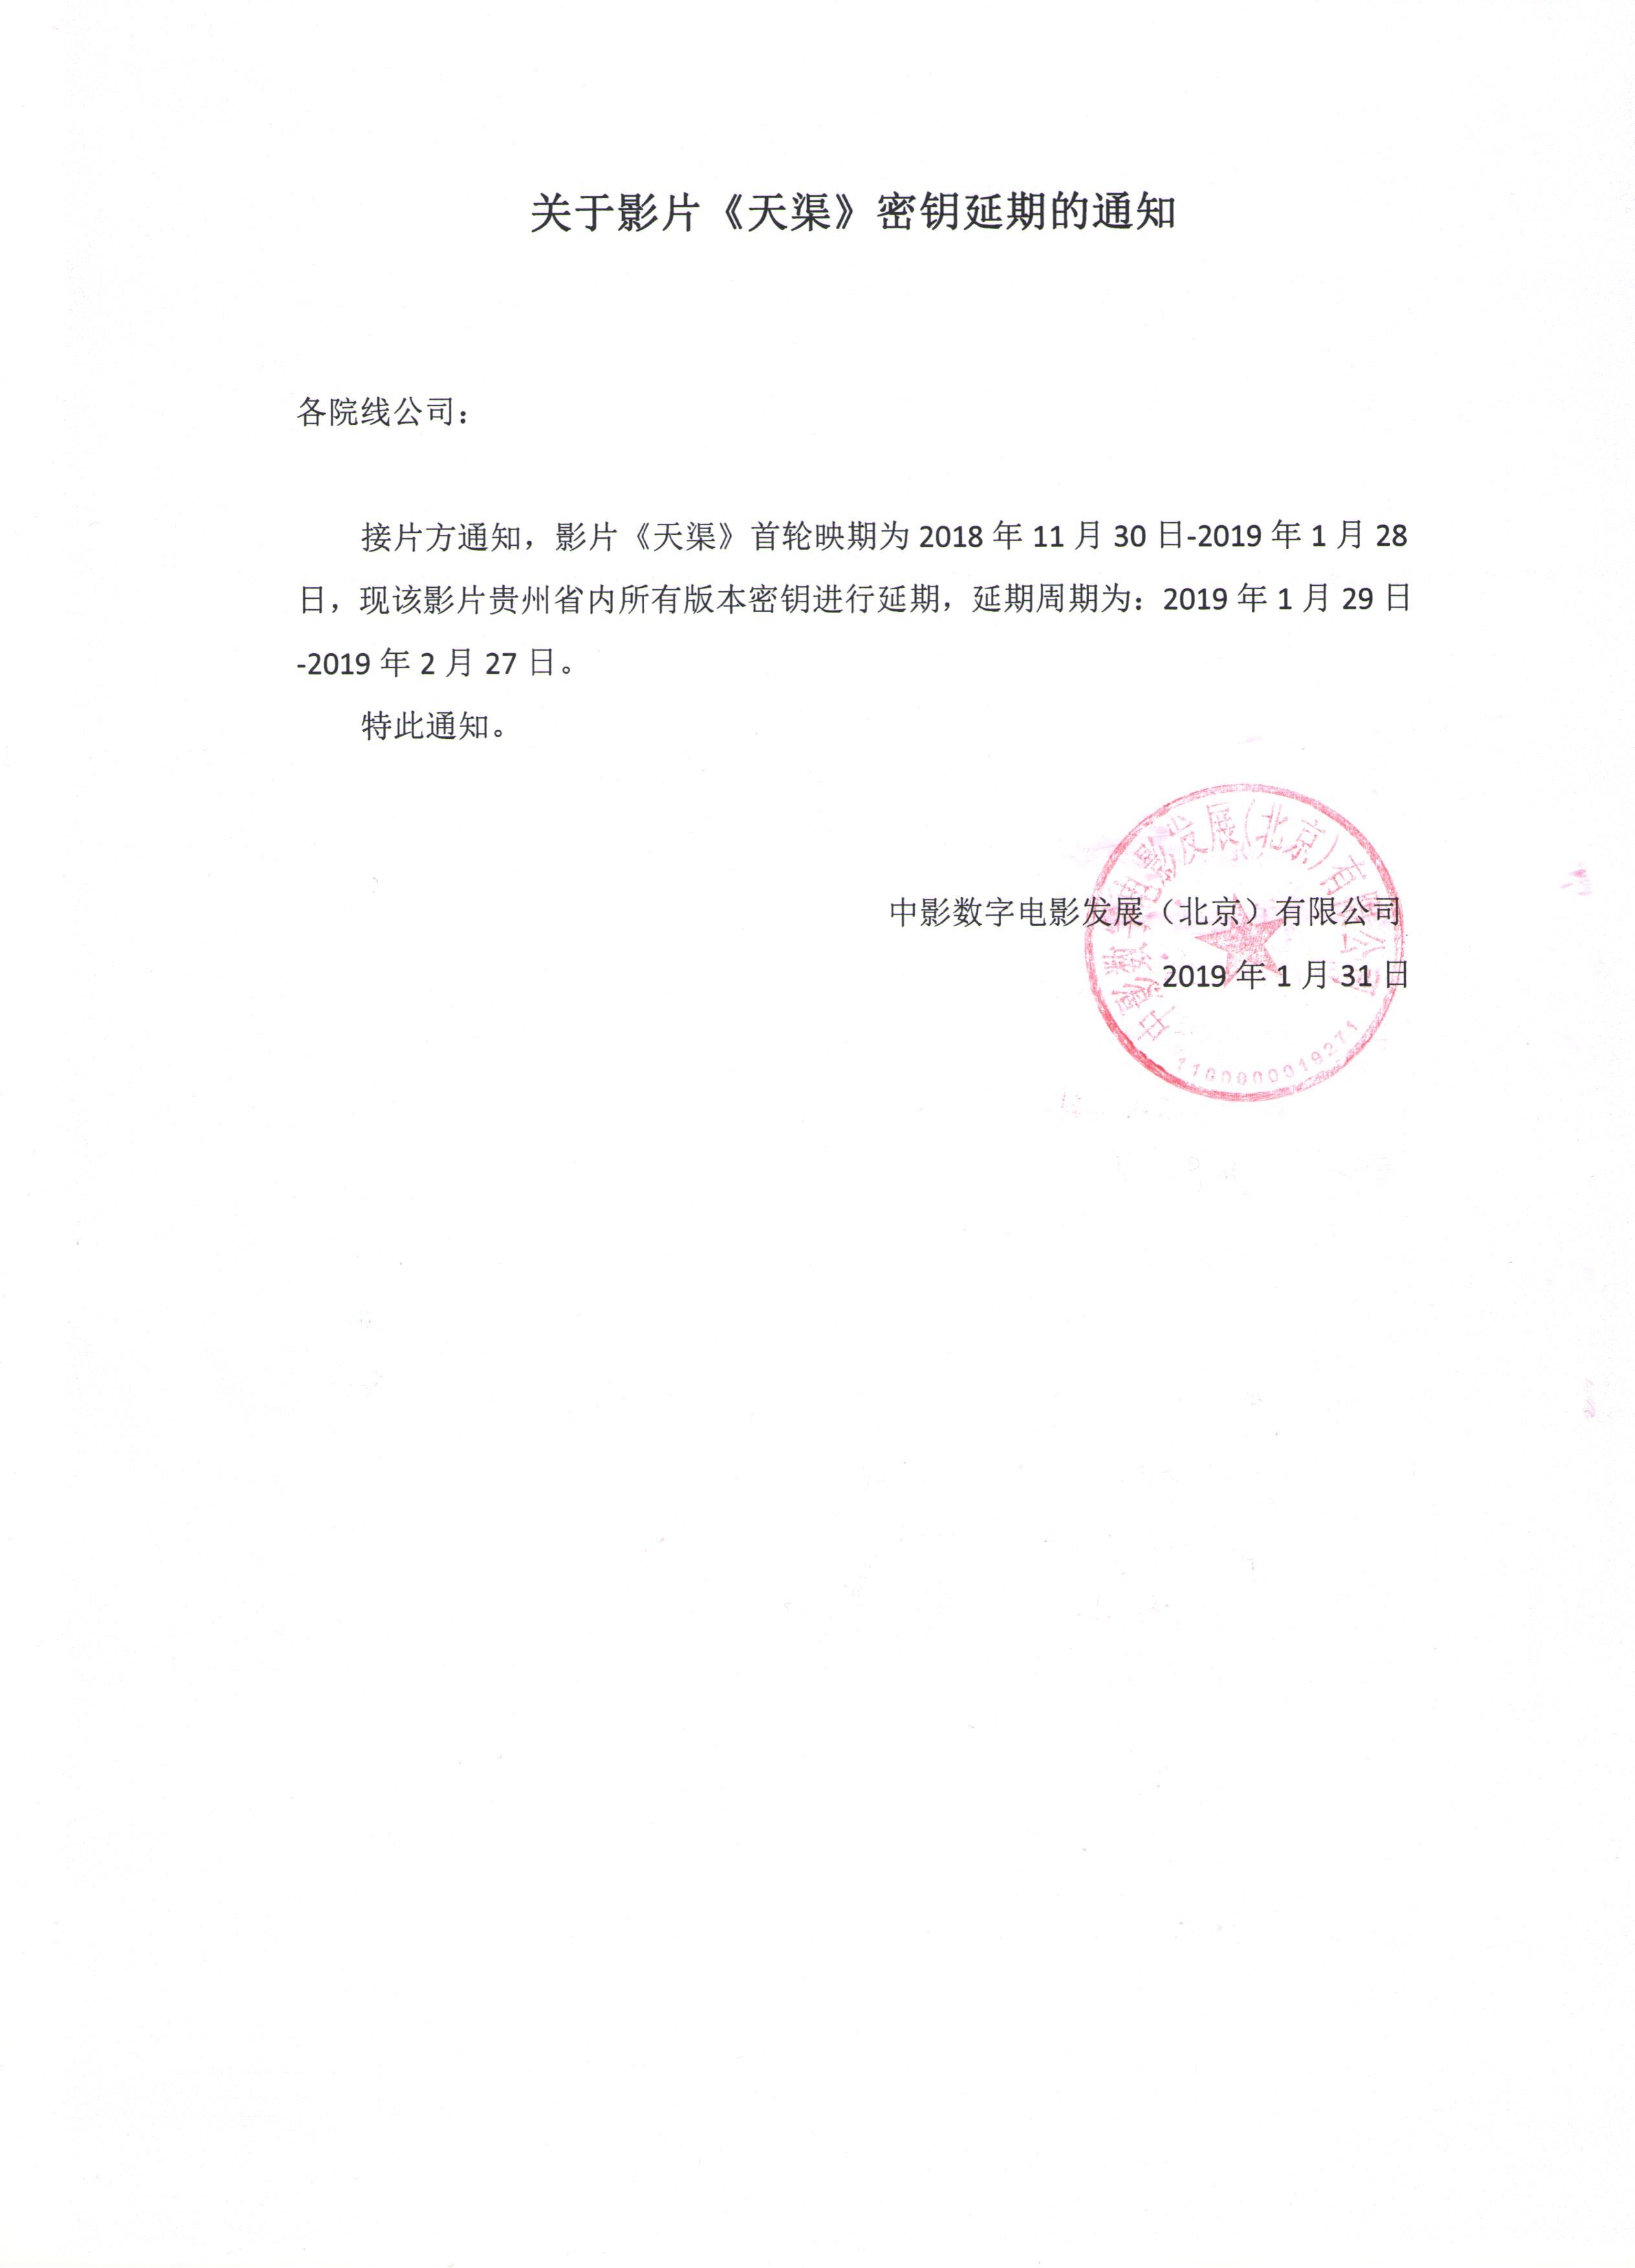 关于影片《天渠》贵州省密钥第二次延期通知